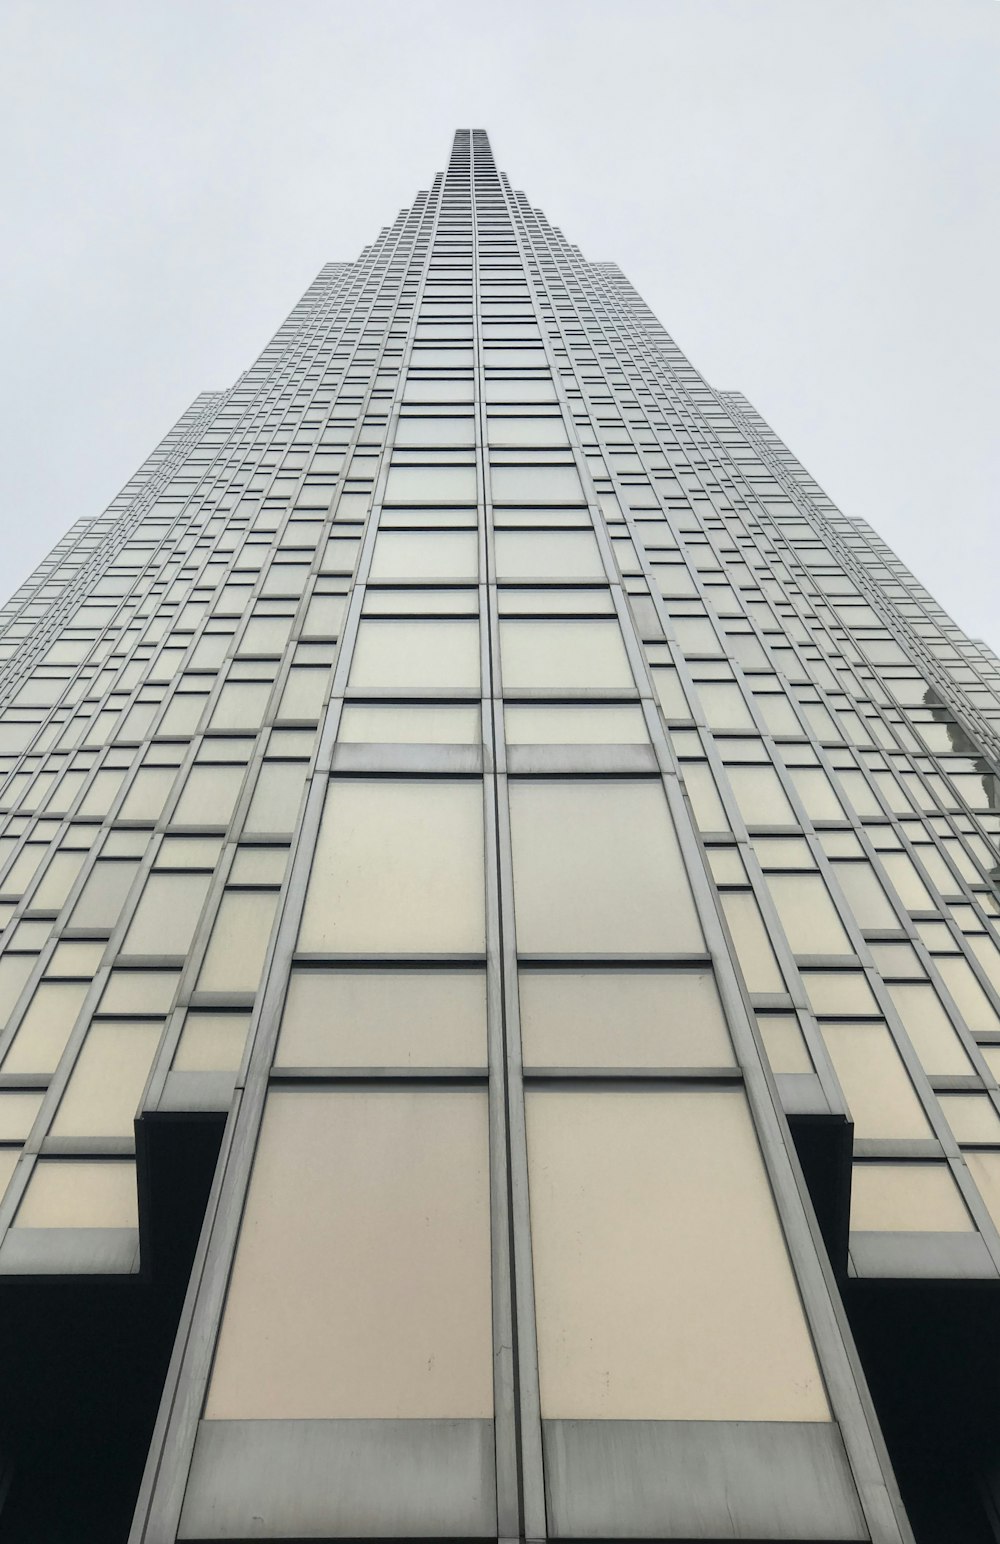 Flachwinkelfotografie eines grauen Glasgebäudes